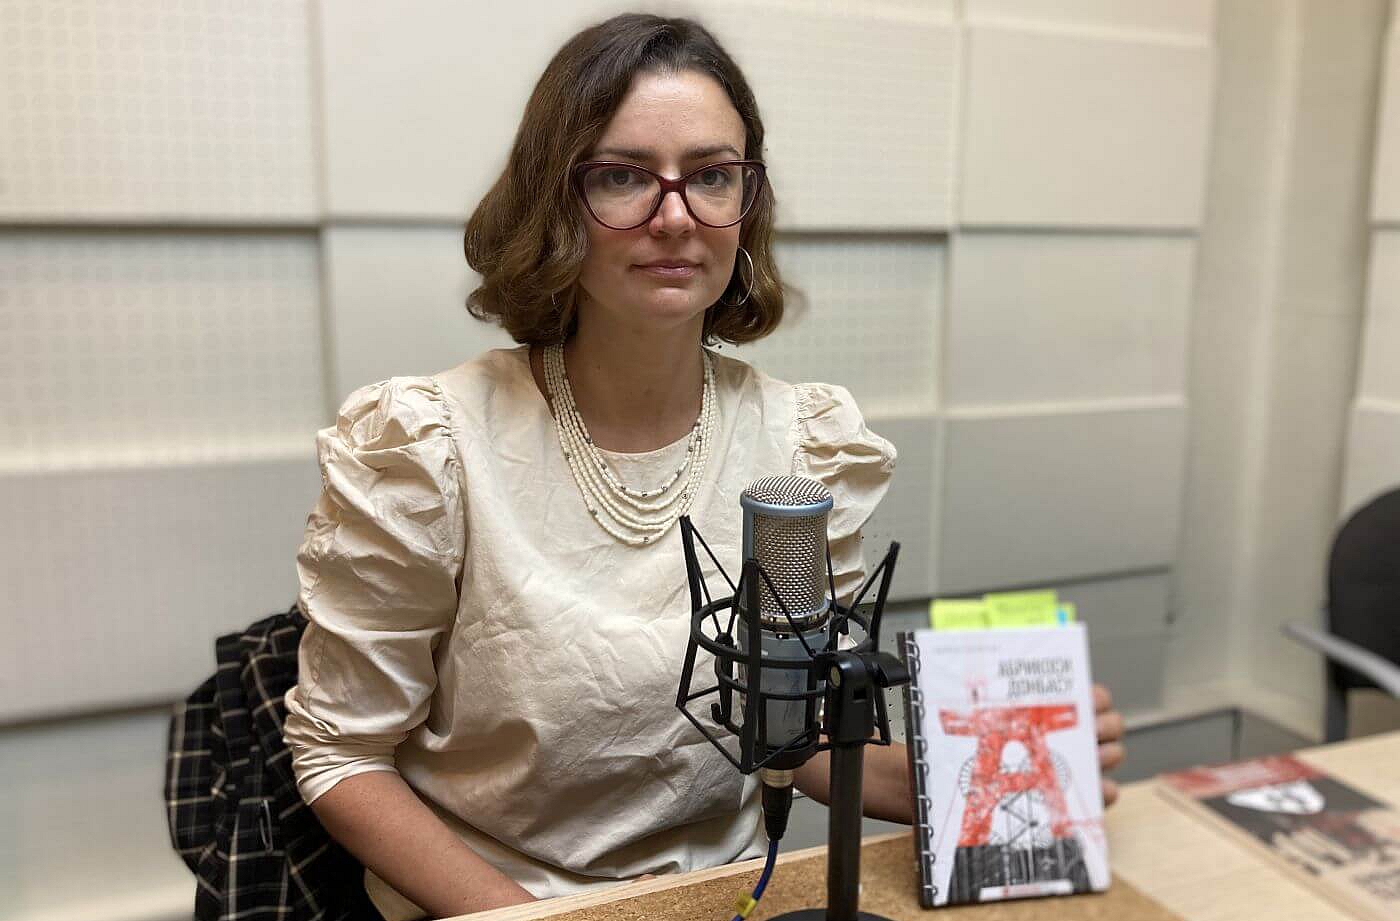 Ukraiņu dzejniece Ļuba Jakimčuka: Kara laikā valodai ir citas funkcijas